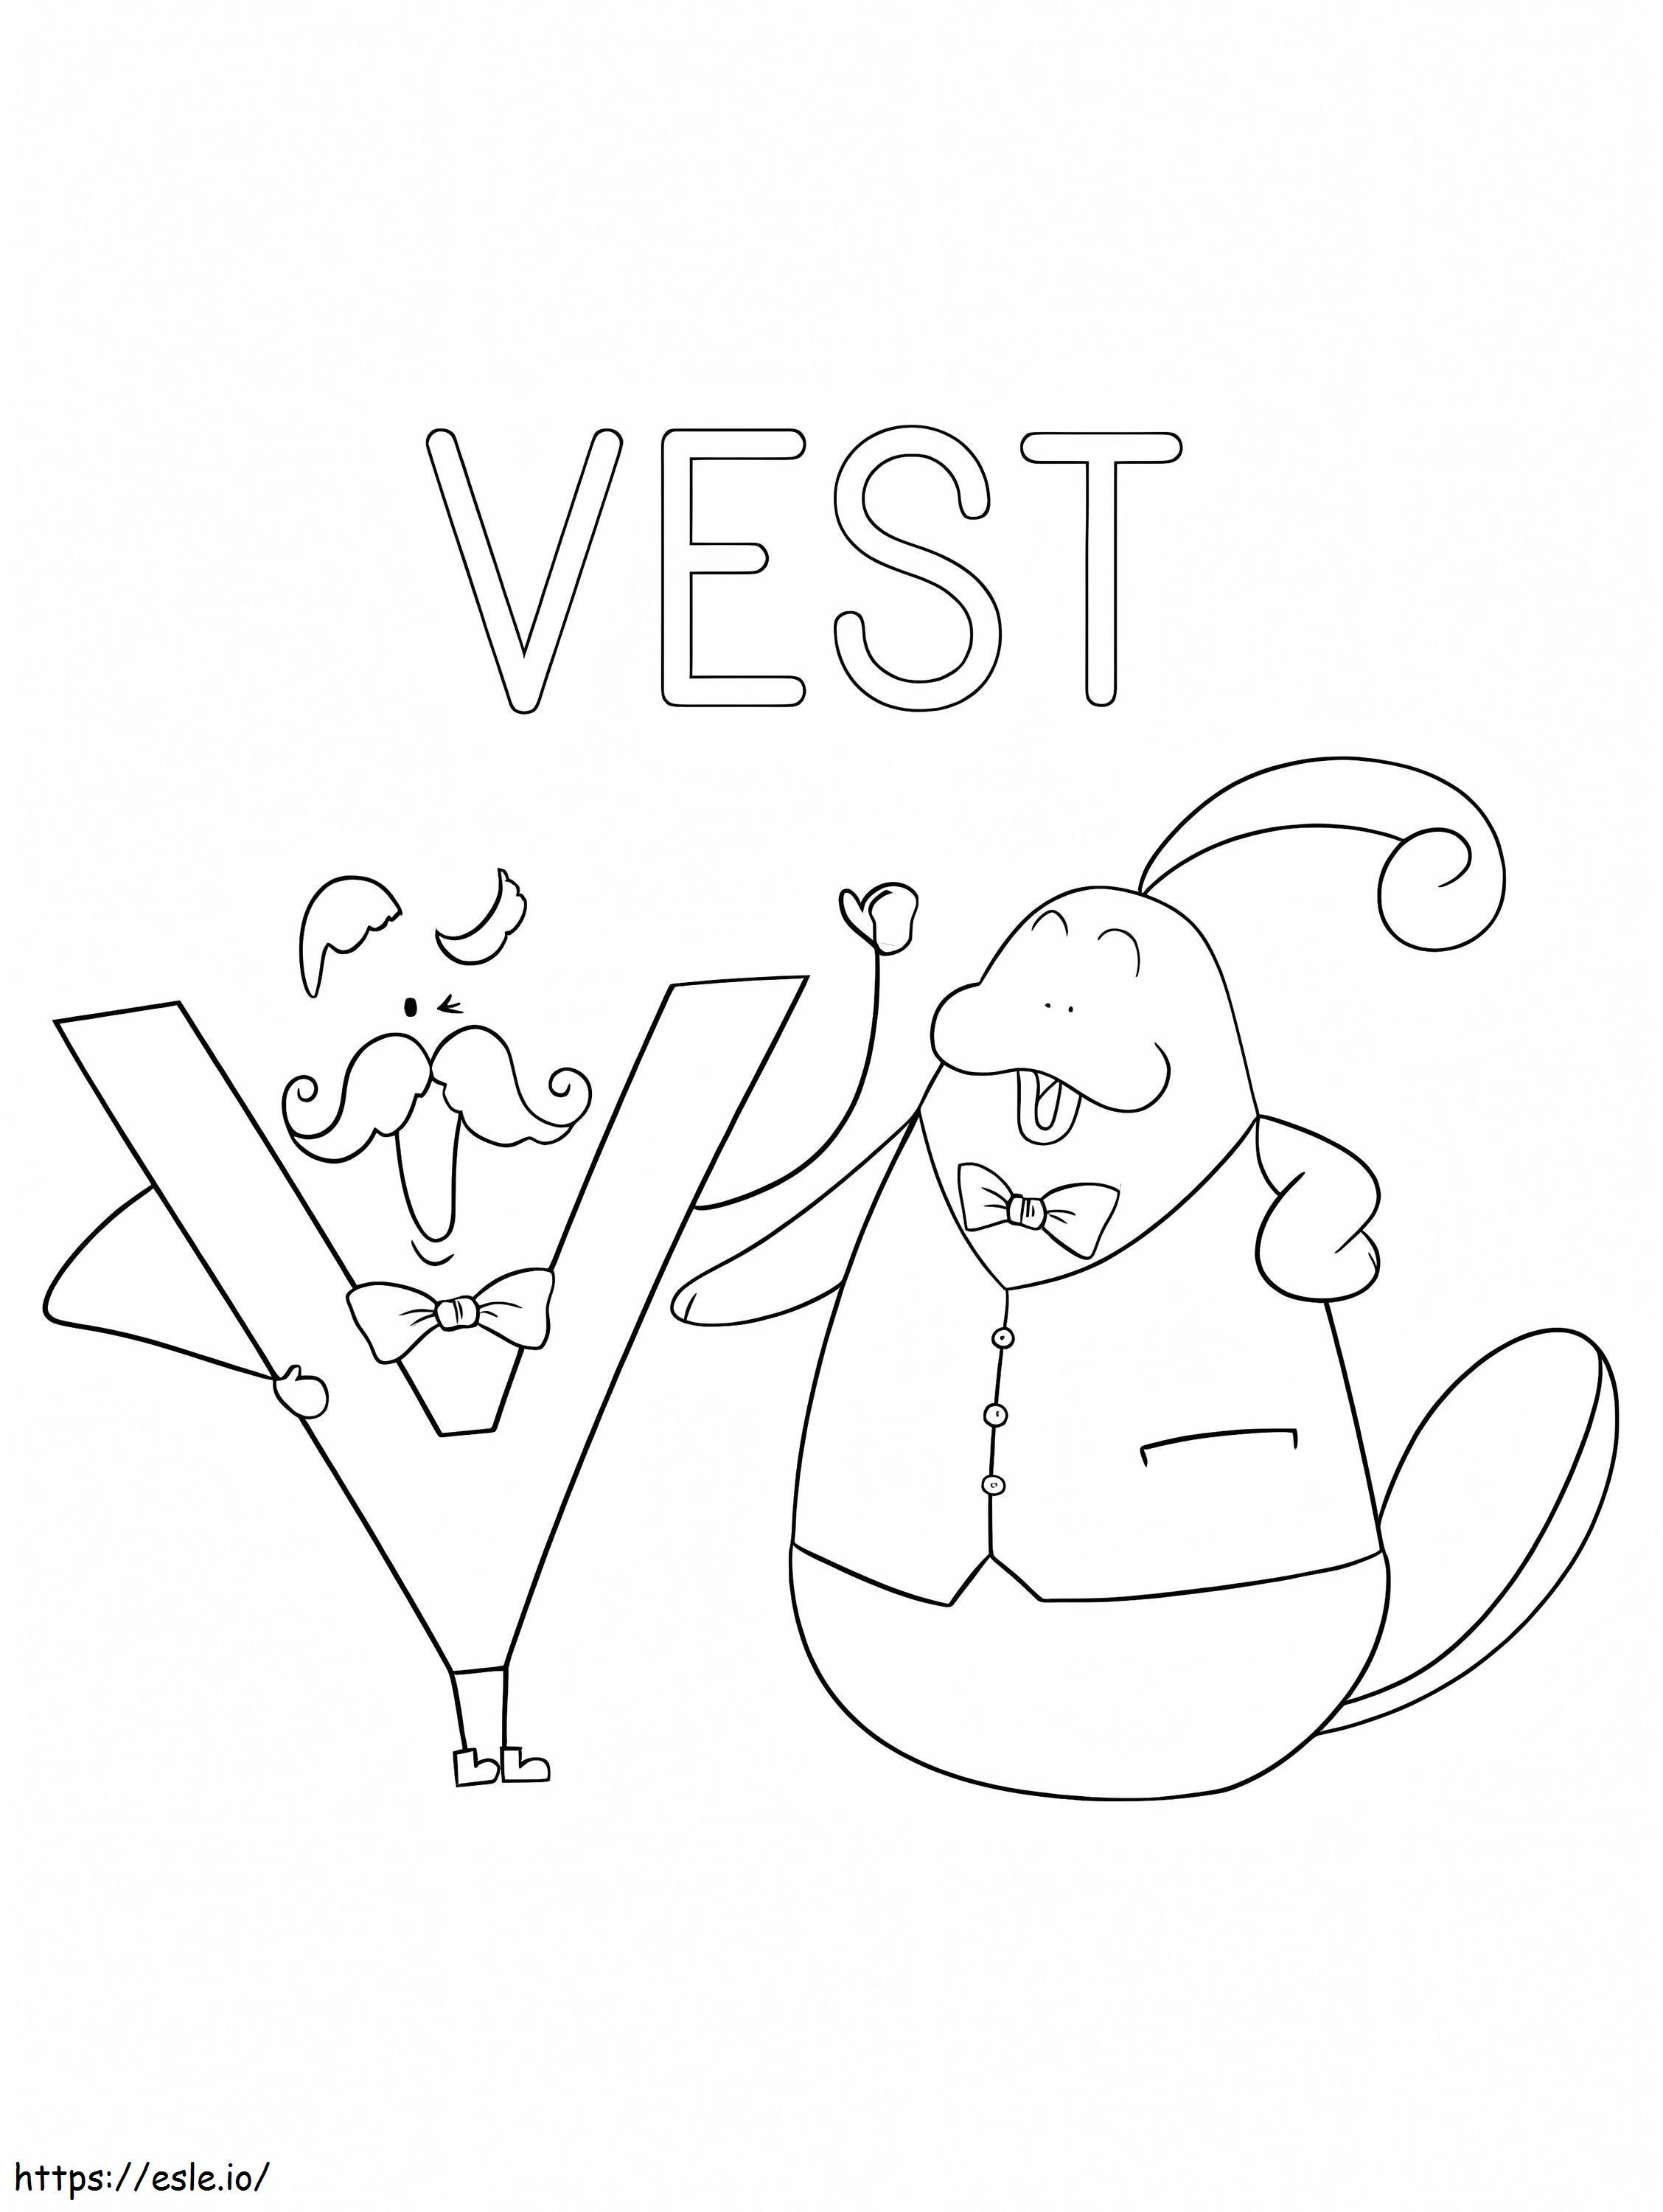 Letter V Vest coloring page